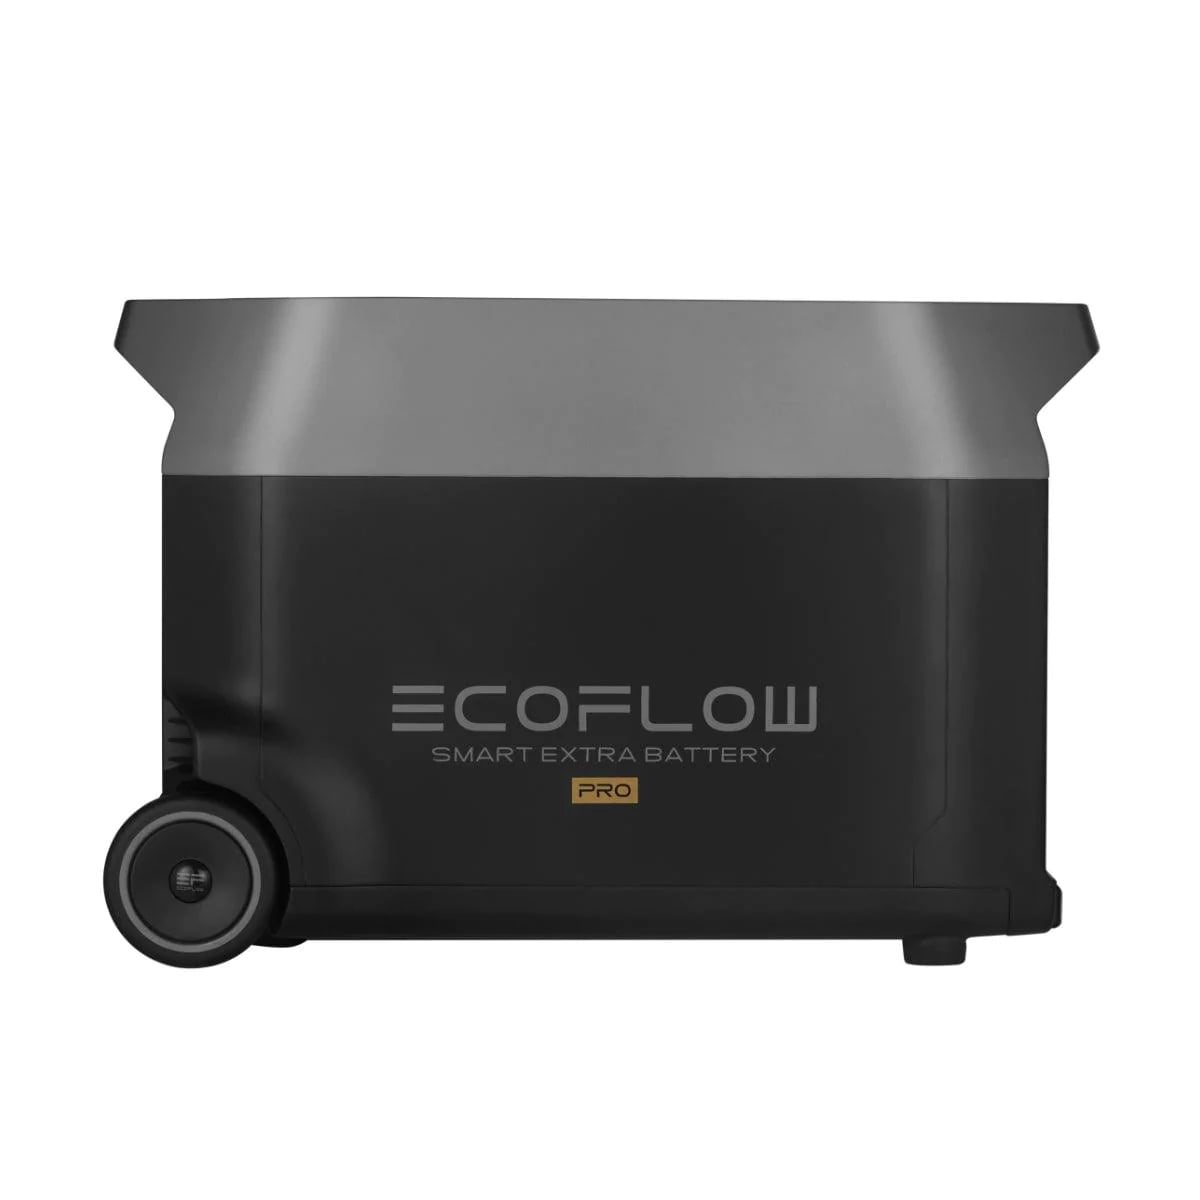 EcoFlow DELTA Pro専用エクストラバッテリー サポートマーケティングサービス公式ネットショップ